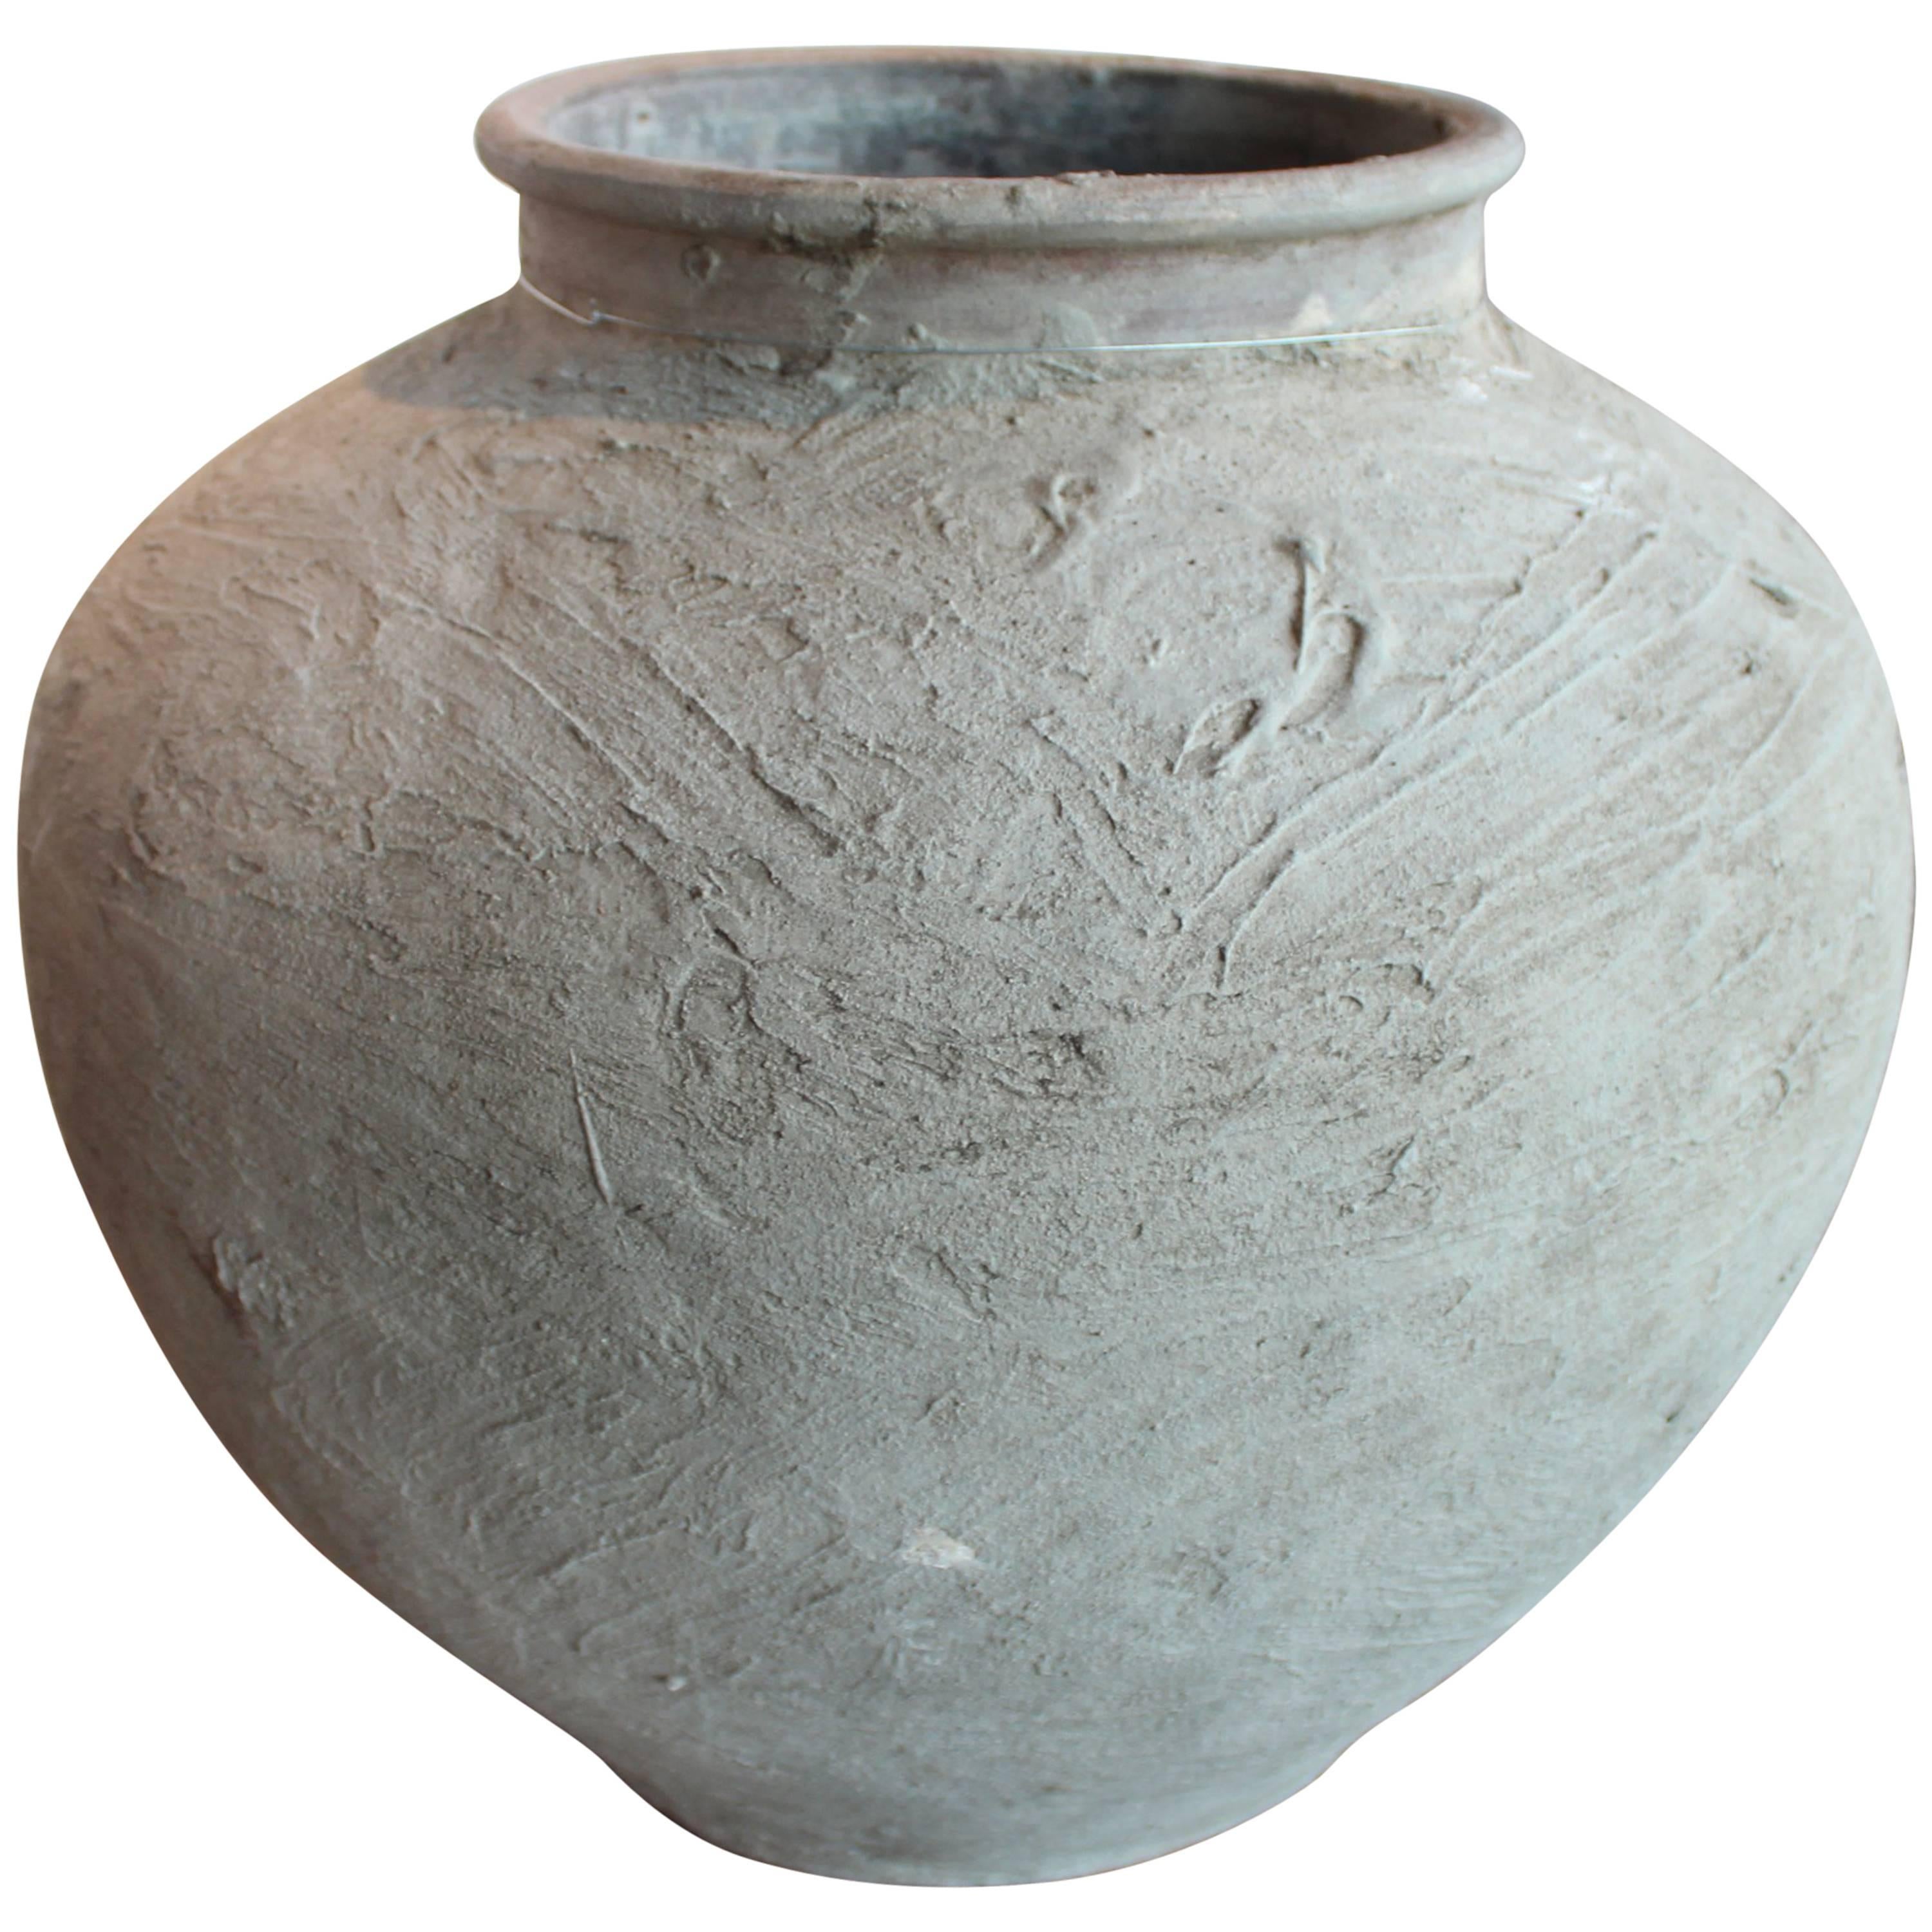 Primitive Antique Terra Cotta Jar